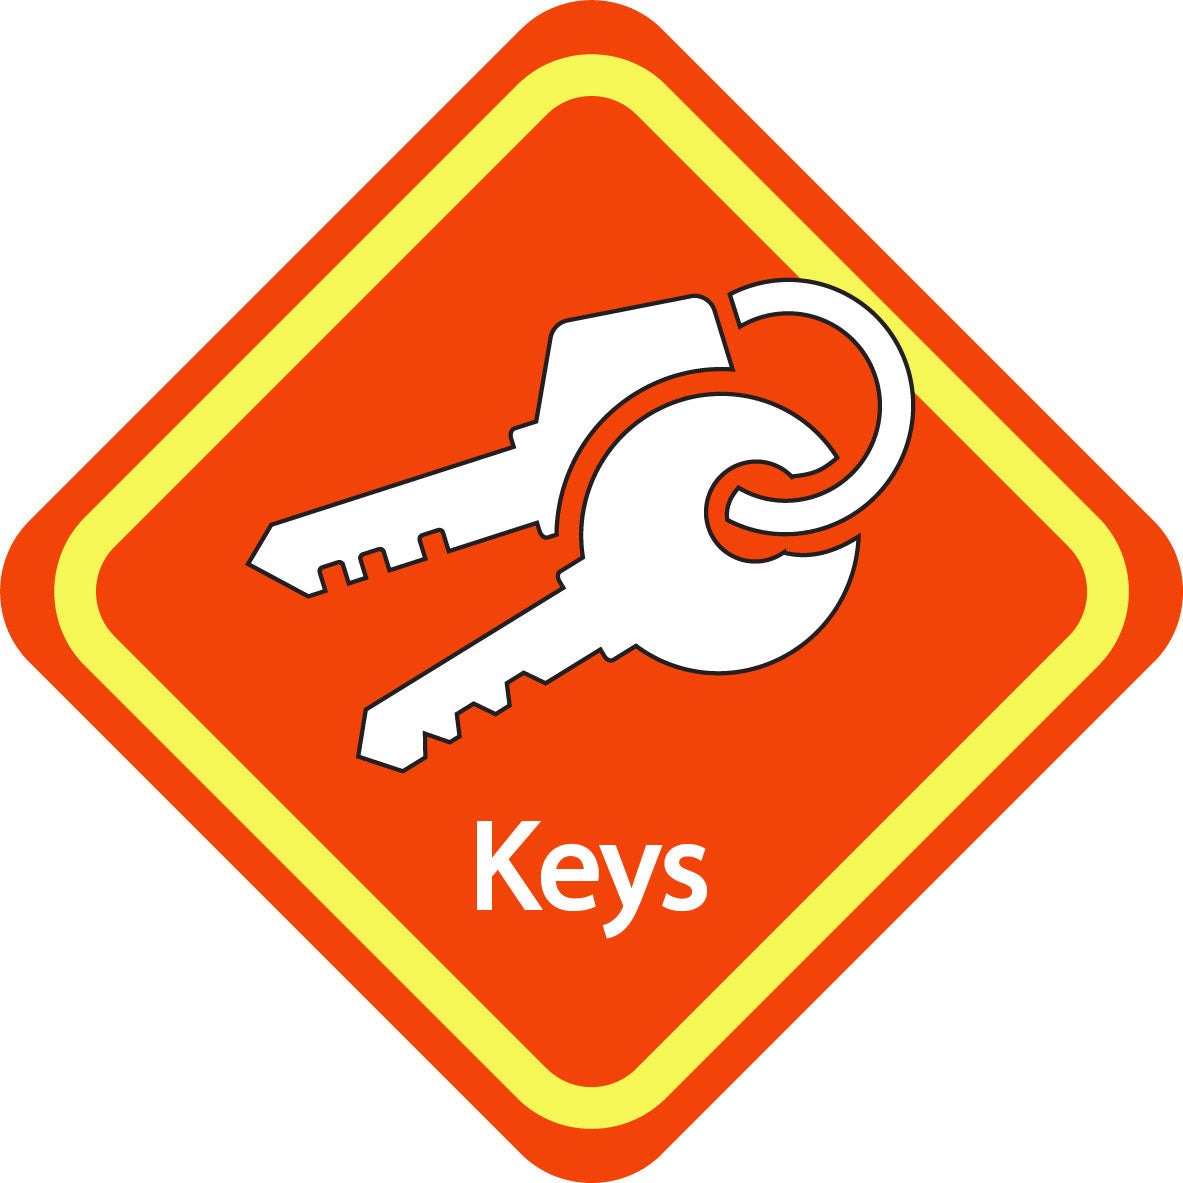 keys reminder sign